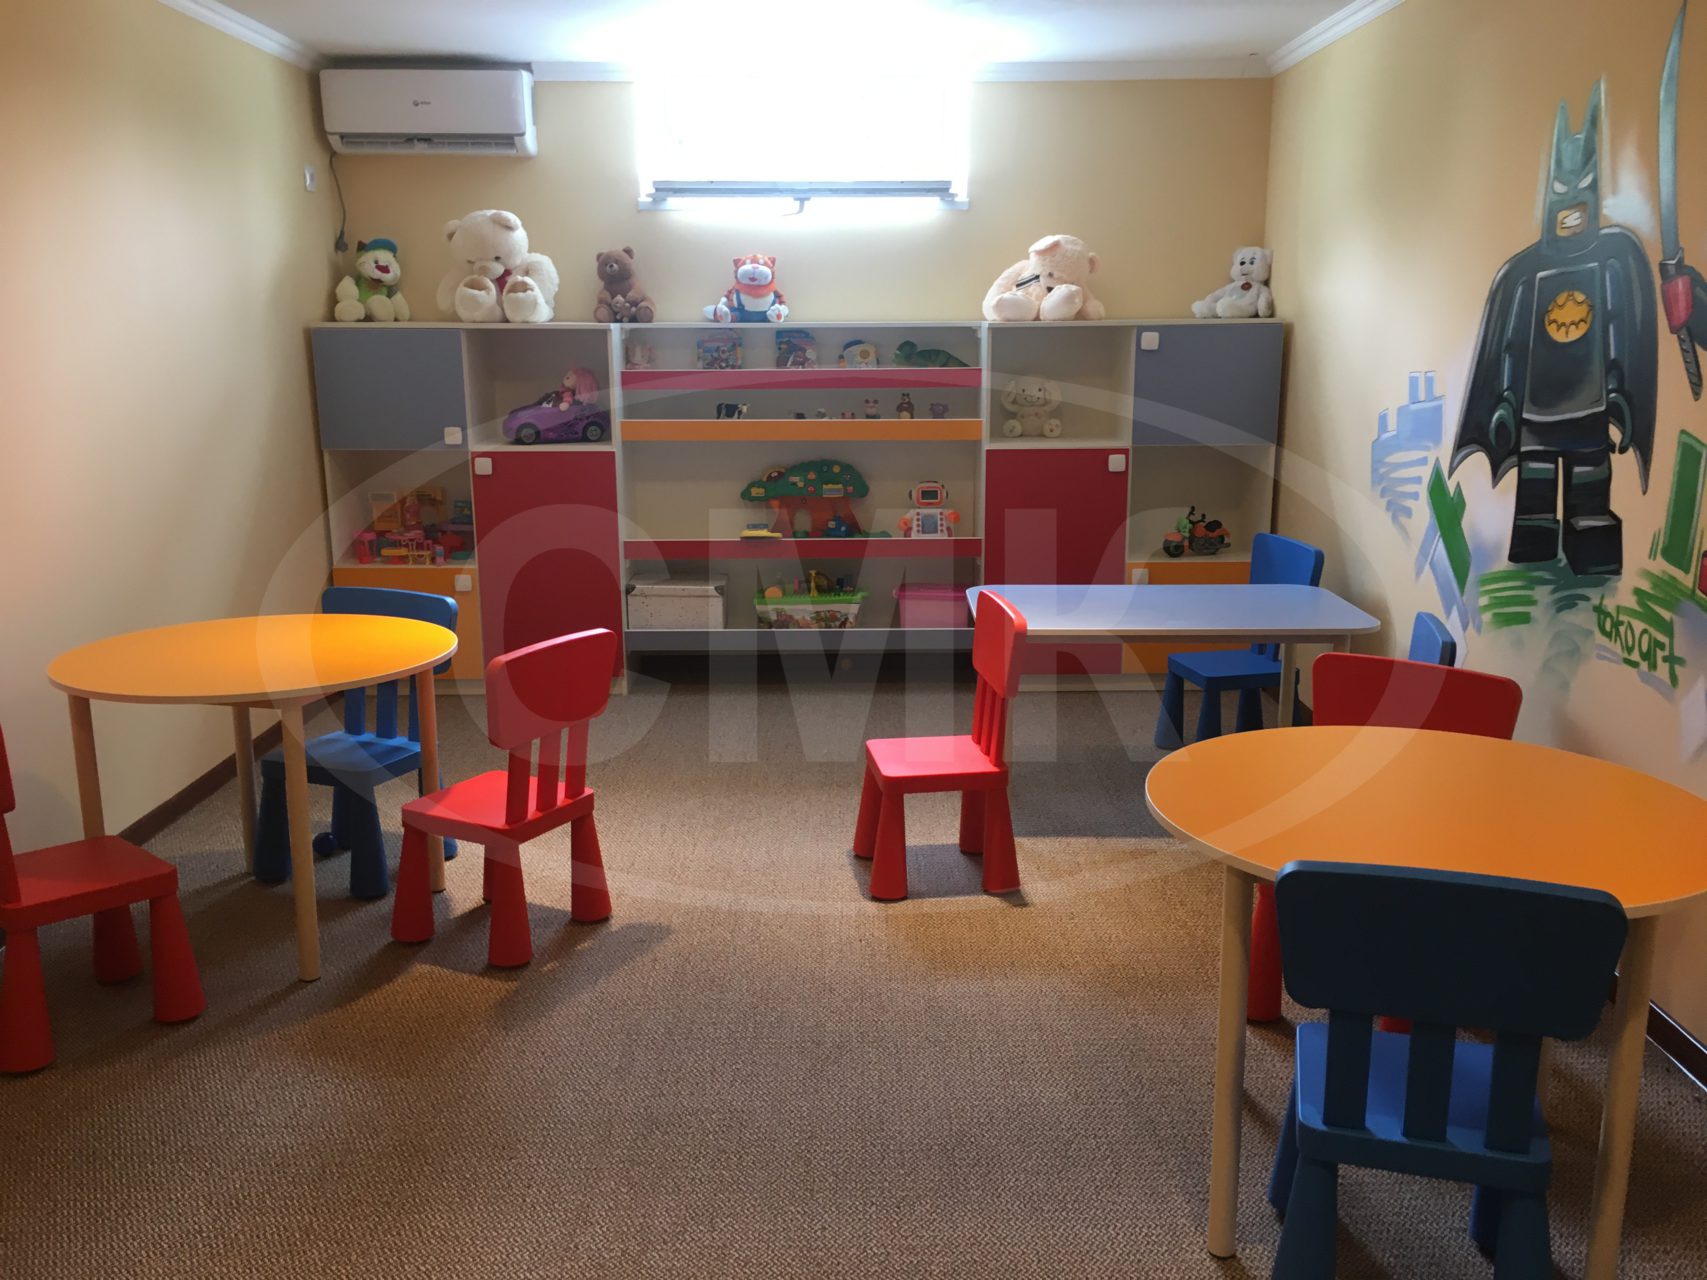 Мебель для детских учреждений